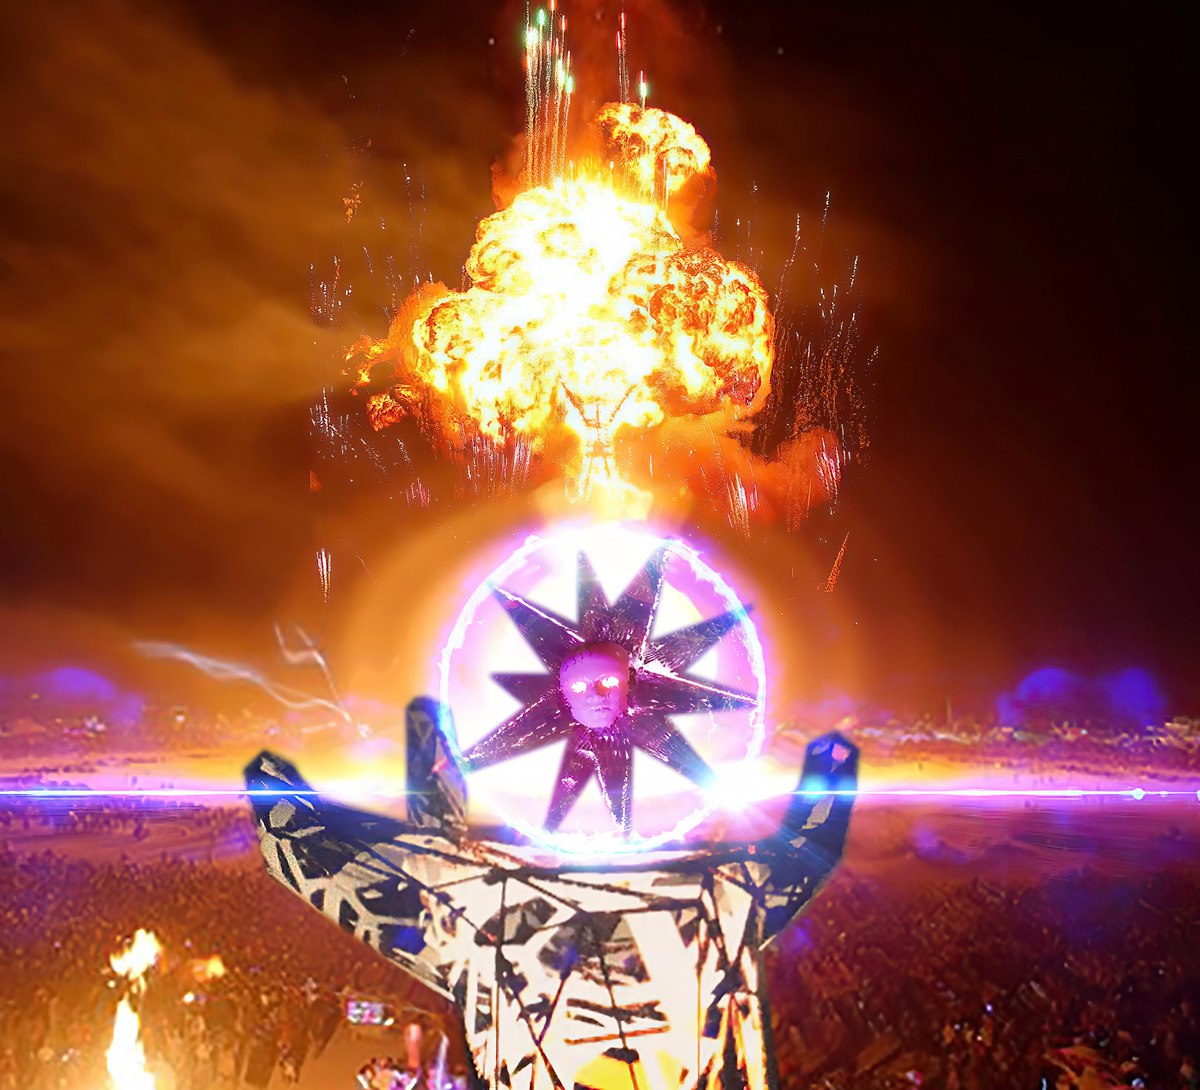 История Прометея от Валерия Коршунова — успех украинского проекта на фестивале Burning Man